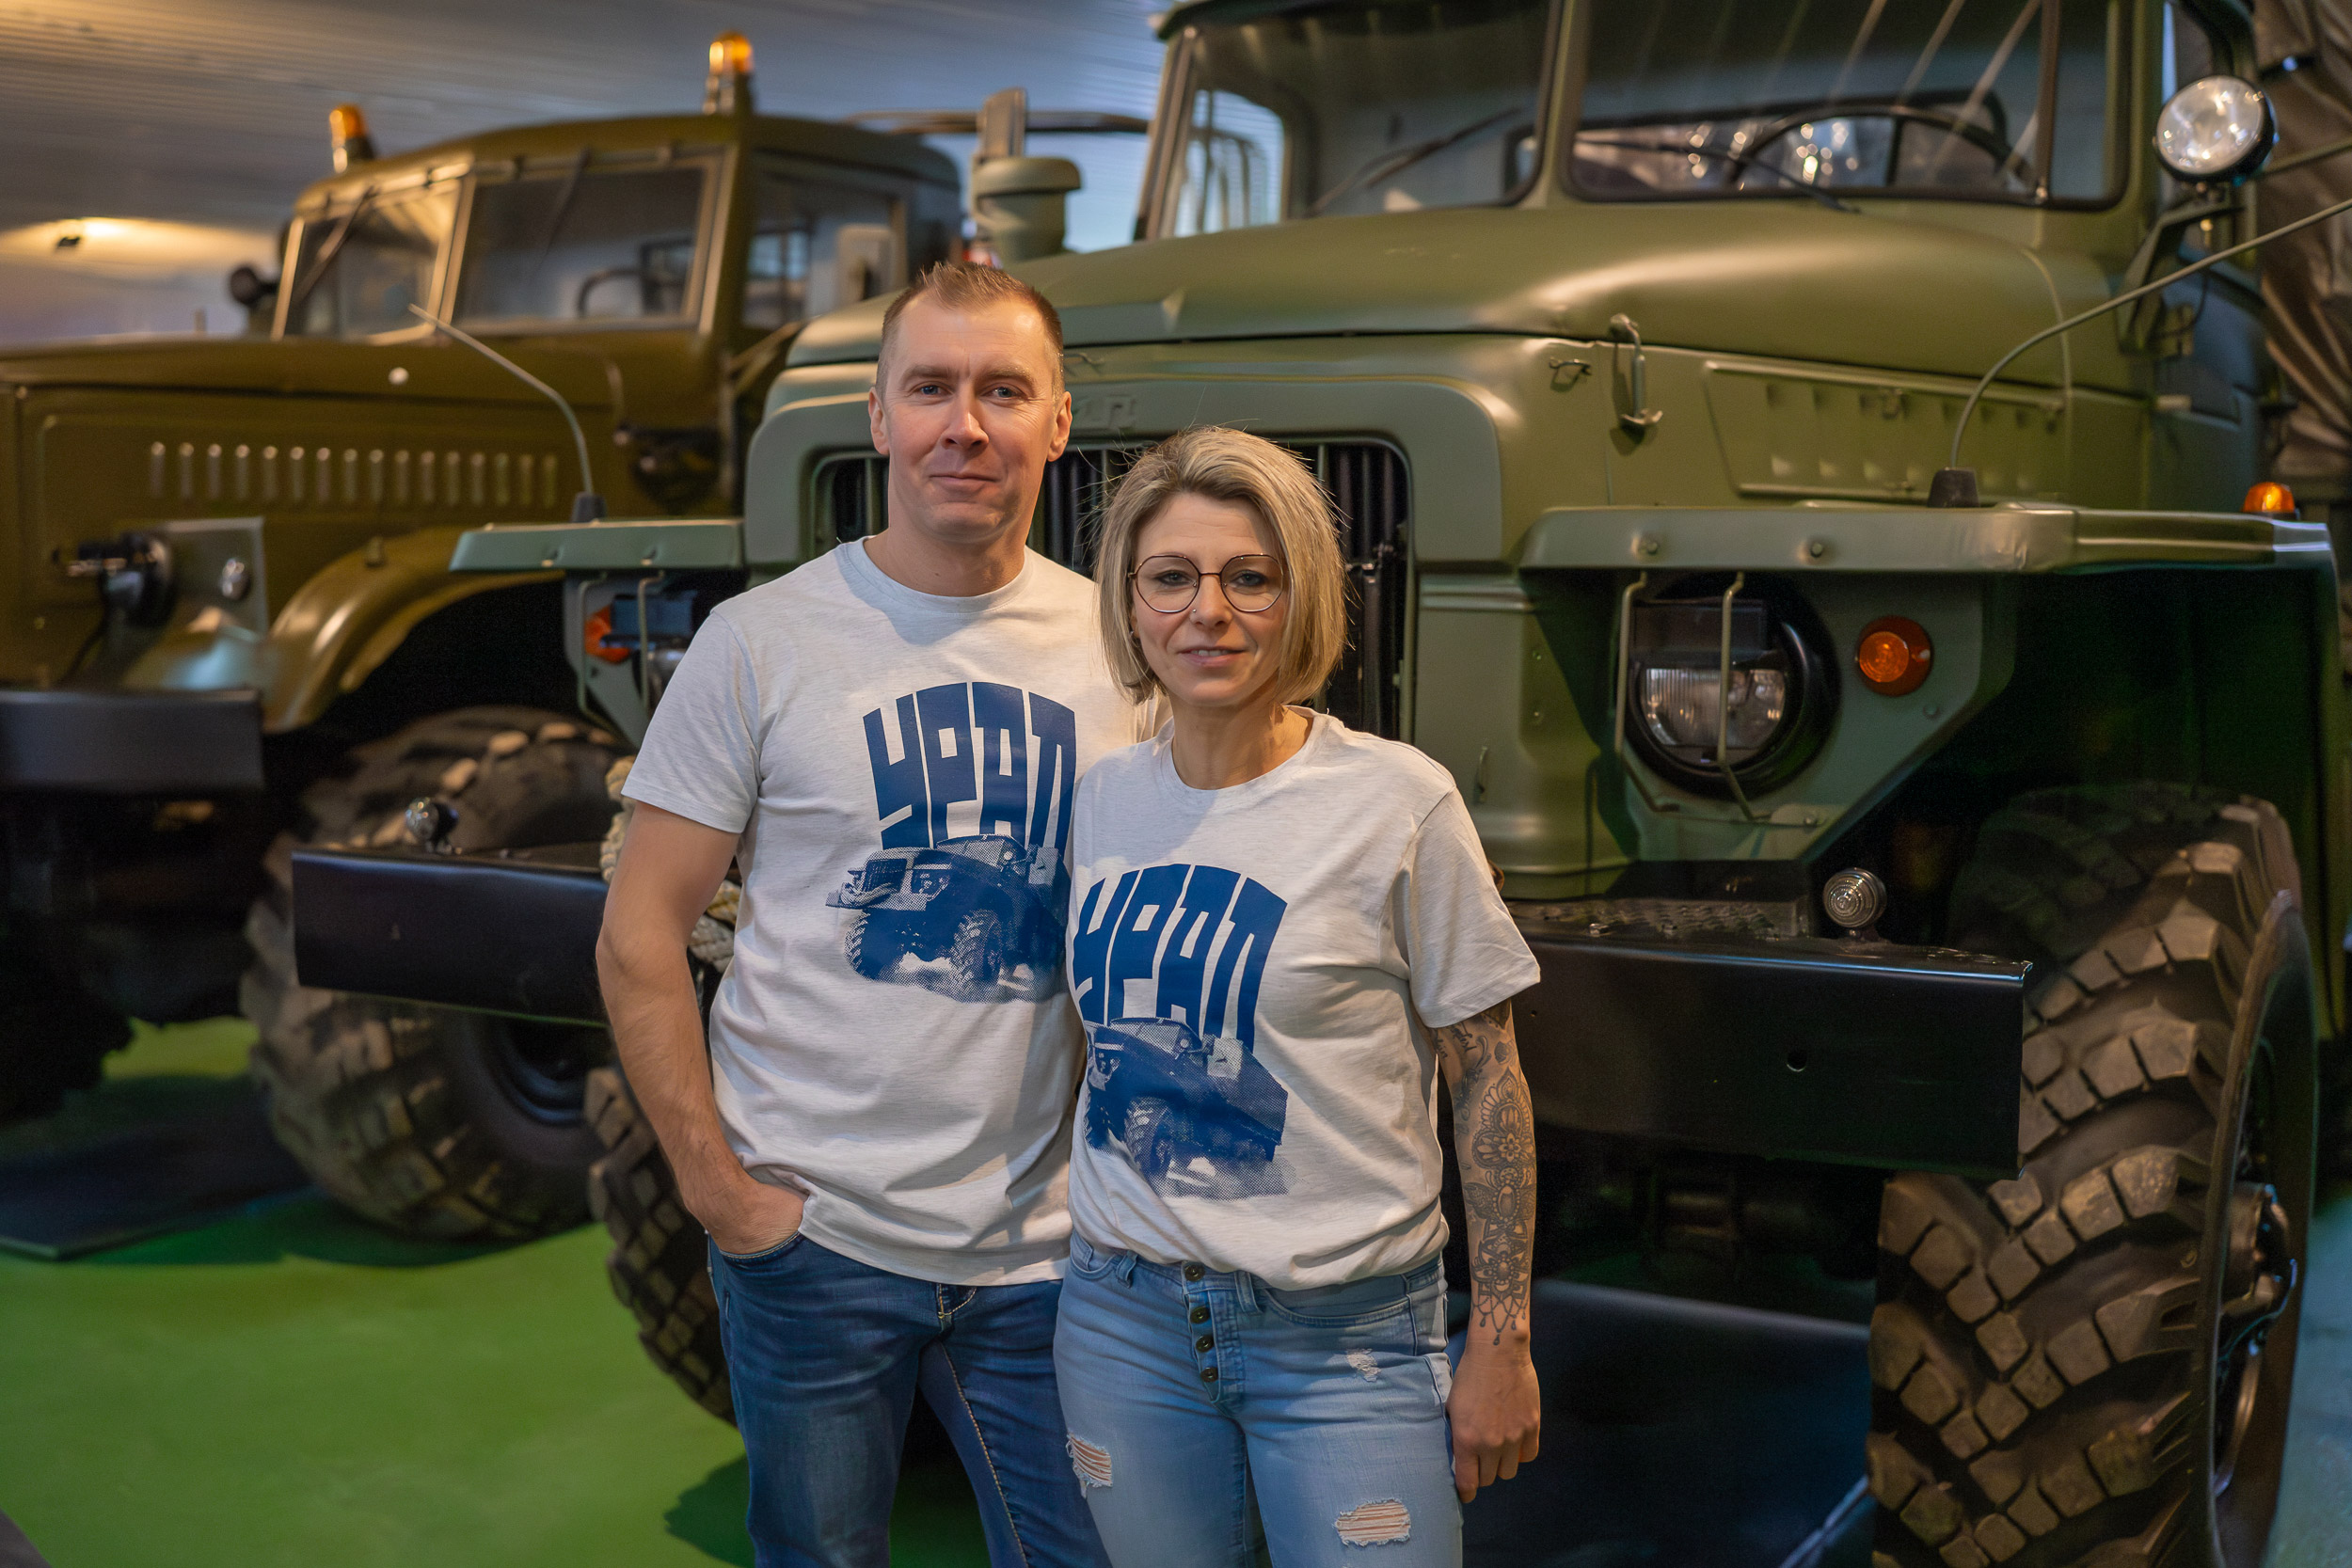 Frau und Mann vor Ural im Museum, beide tragen grau meliertes T-Shirt mit dunkelblauem Ural-Print und dunkelblauer Aufschrift URAL in kyrillisch